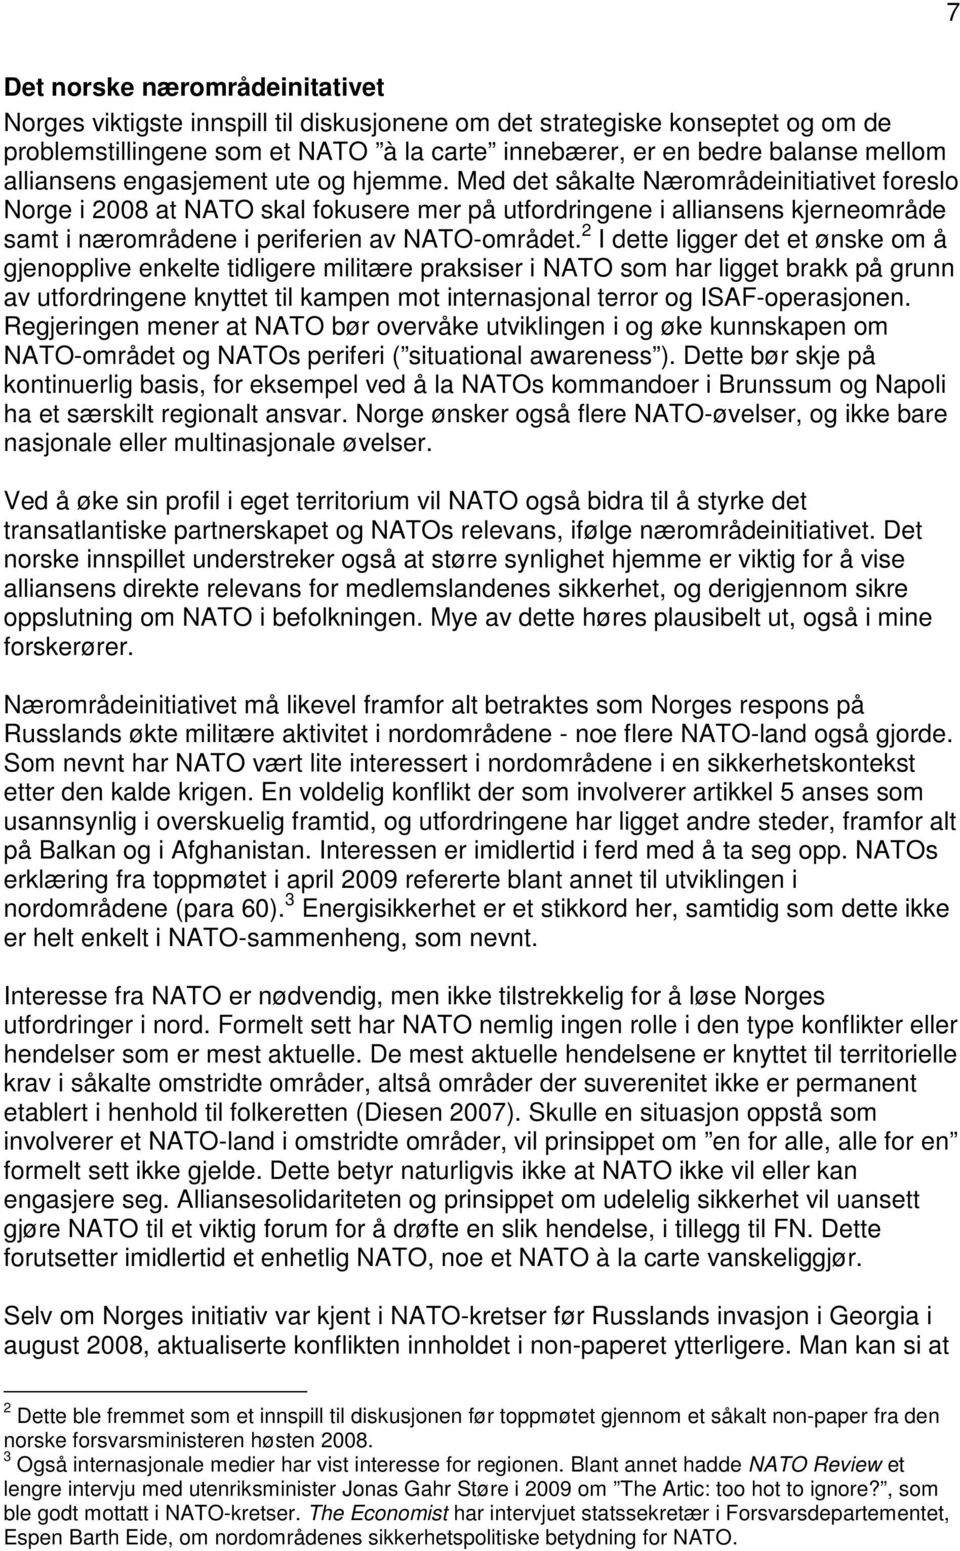 Med det såkalte Nærområdeinitiativet foreslo Norge i 2008 at NATO skal fokusere mer på utfordringene i alliansens kjerneområde samt i nærområdene i periferien av NATO-området.